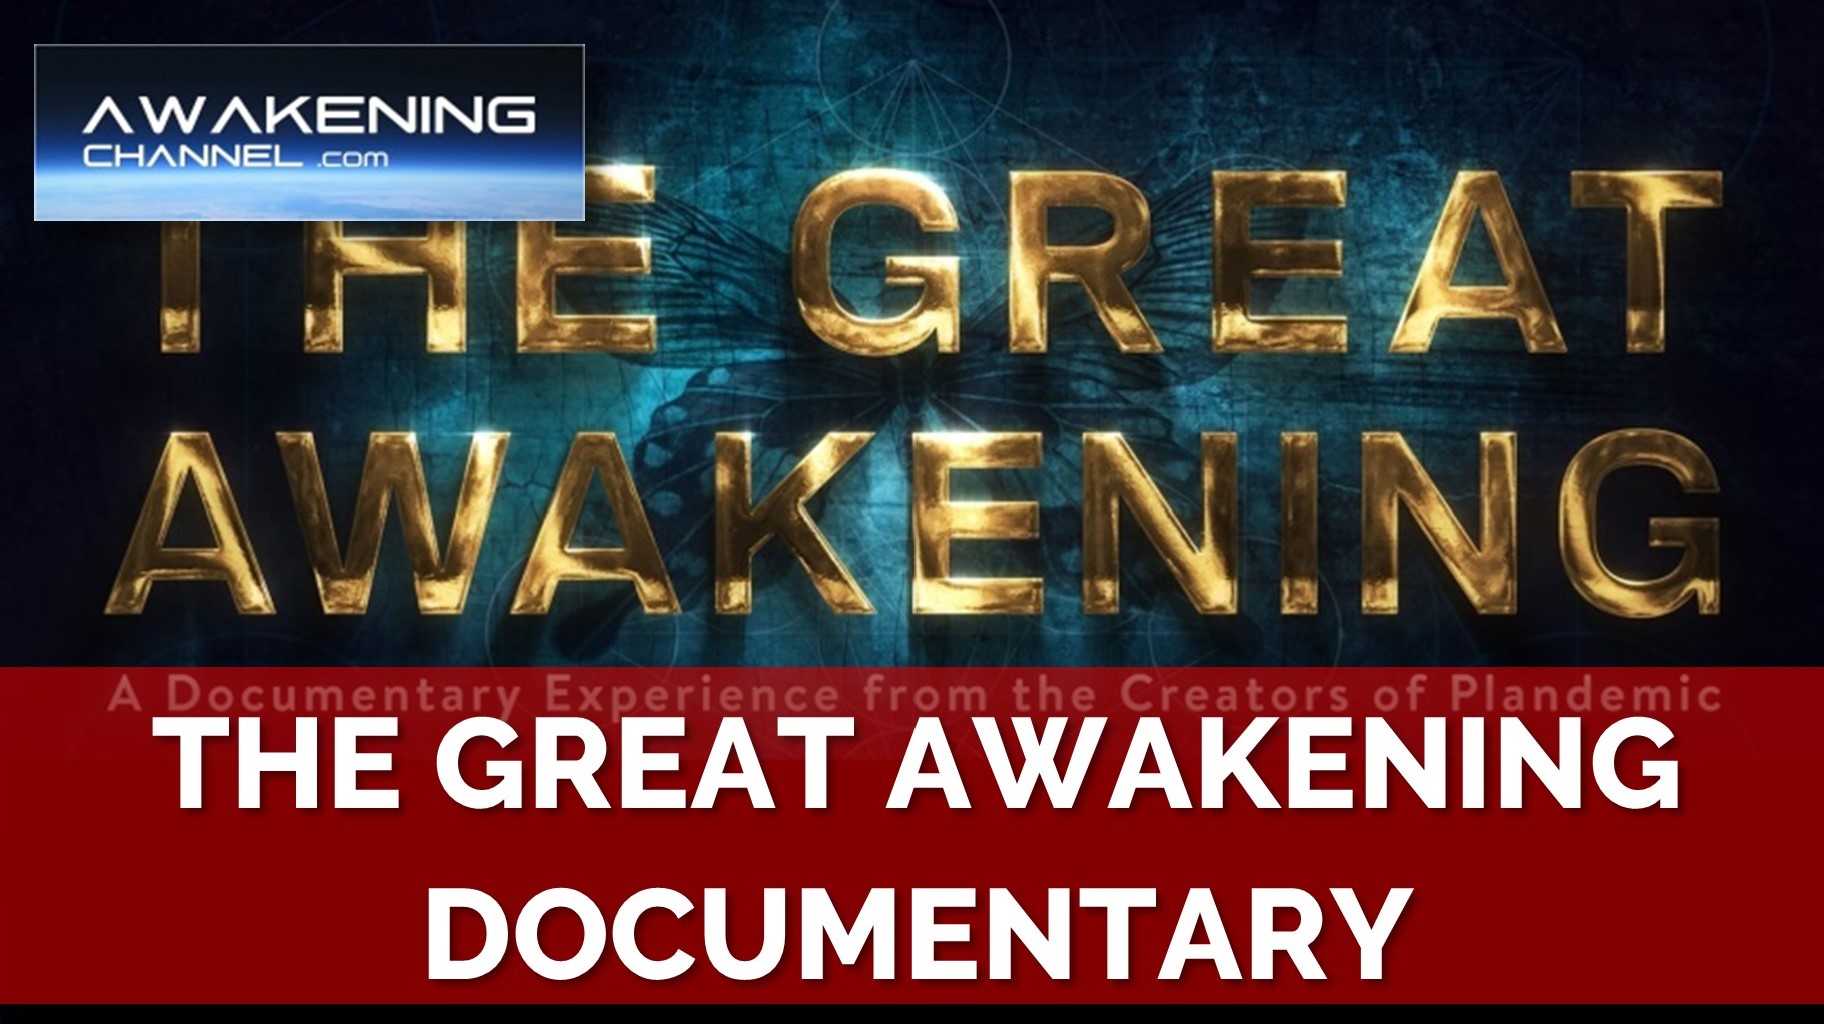 THE GREAT AWAKENING documentary